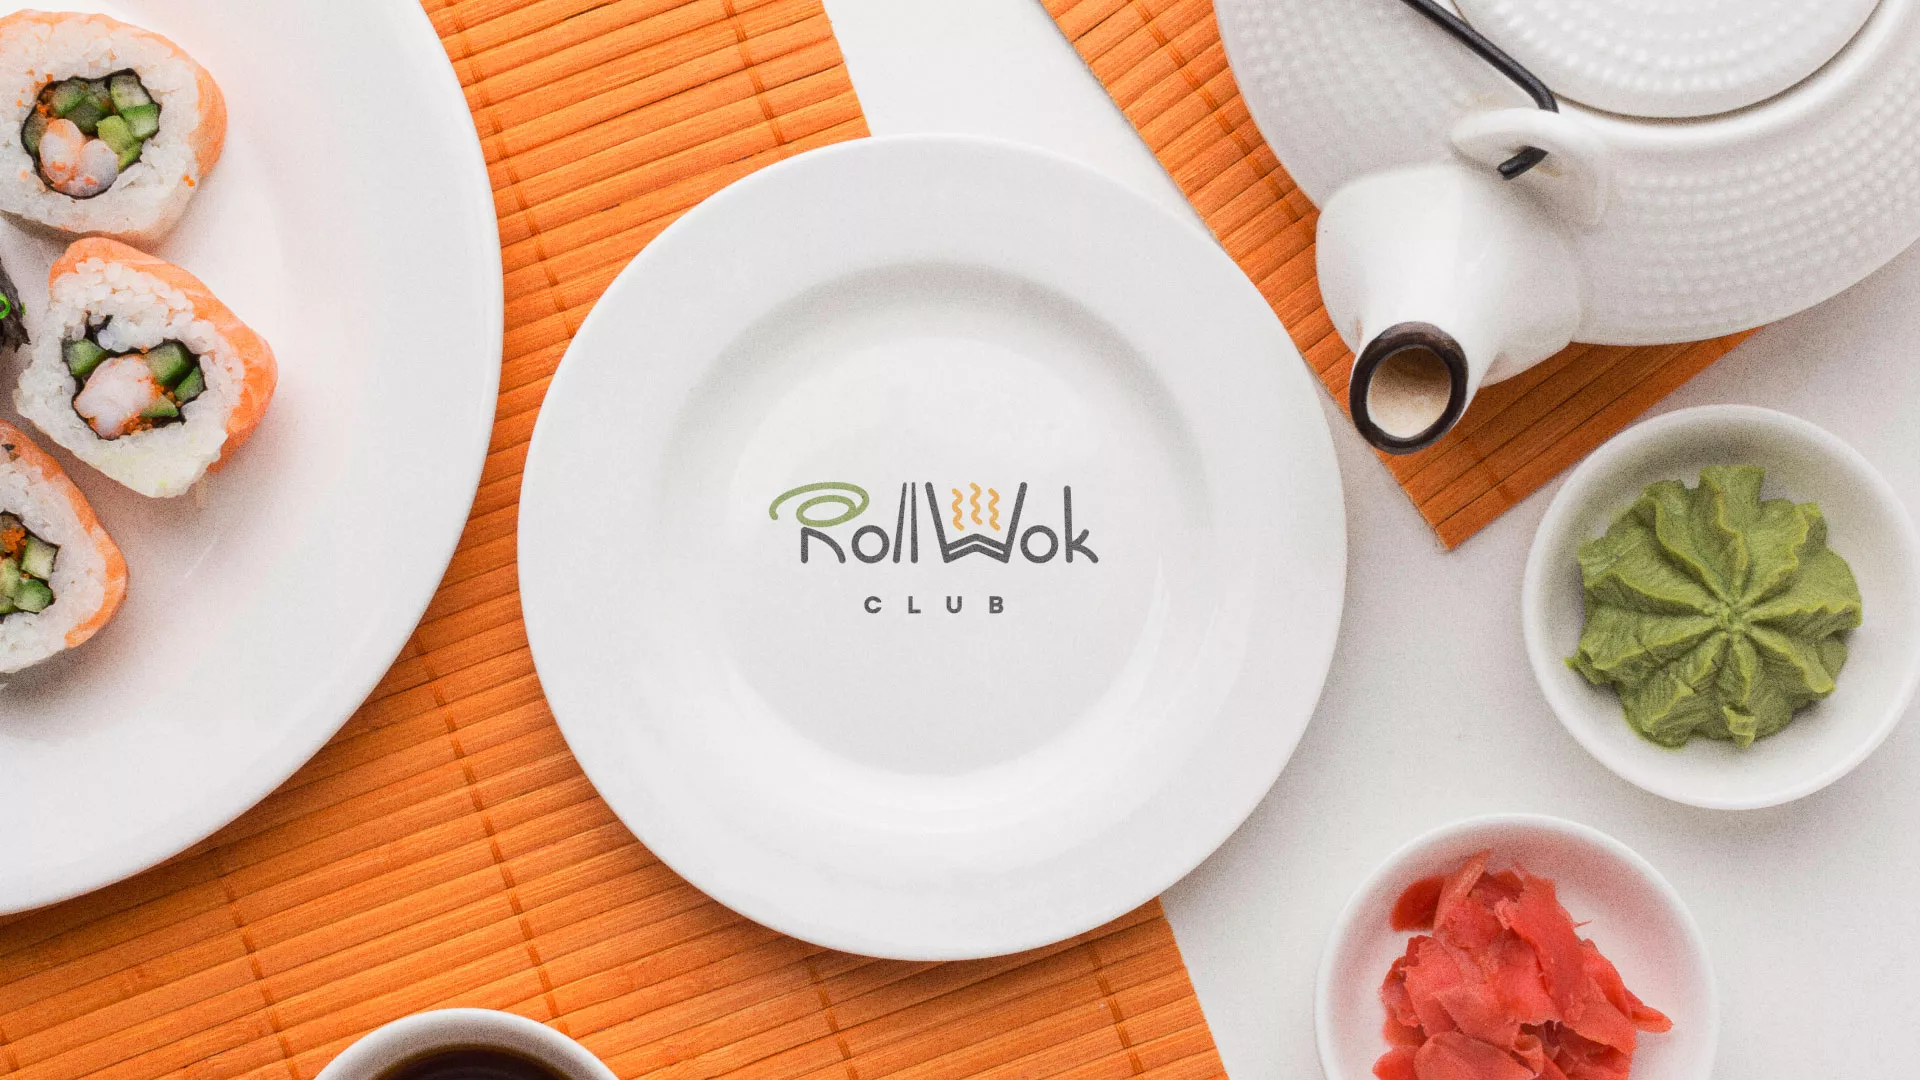 Разработка логотипа и фирменного стиля суши-бара «Roll Wok Club» в Торопце